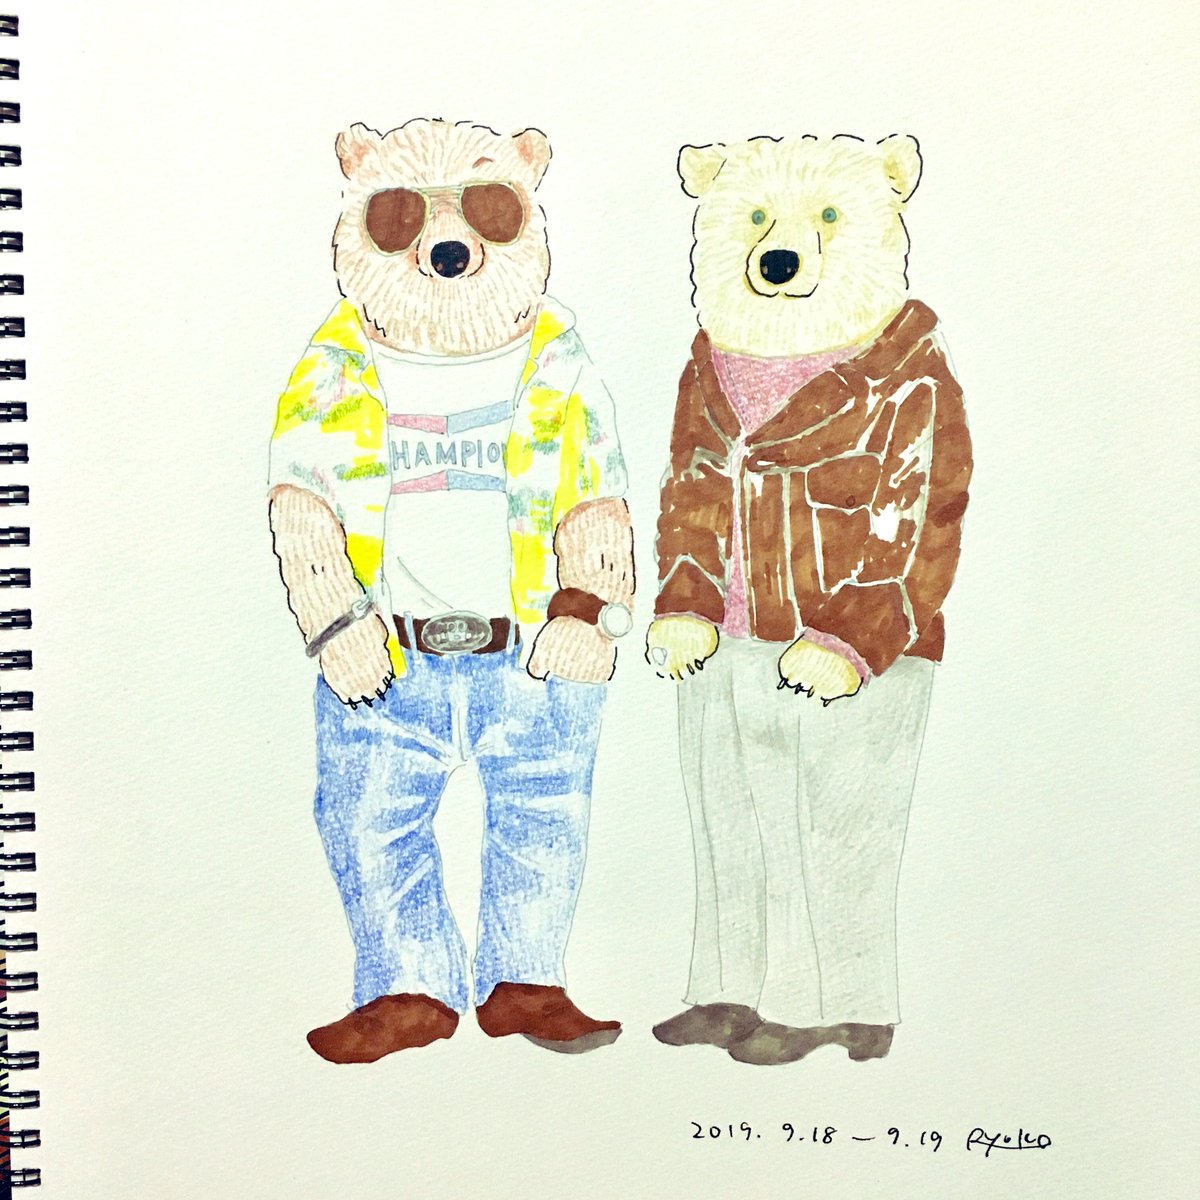 Kuriko A Twitter かっこいい2人に感化されたらしいくまたち 1日1くま クマ 熊 イラスト ワンハリ